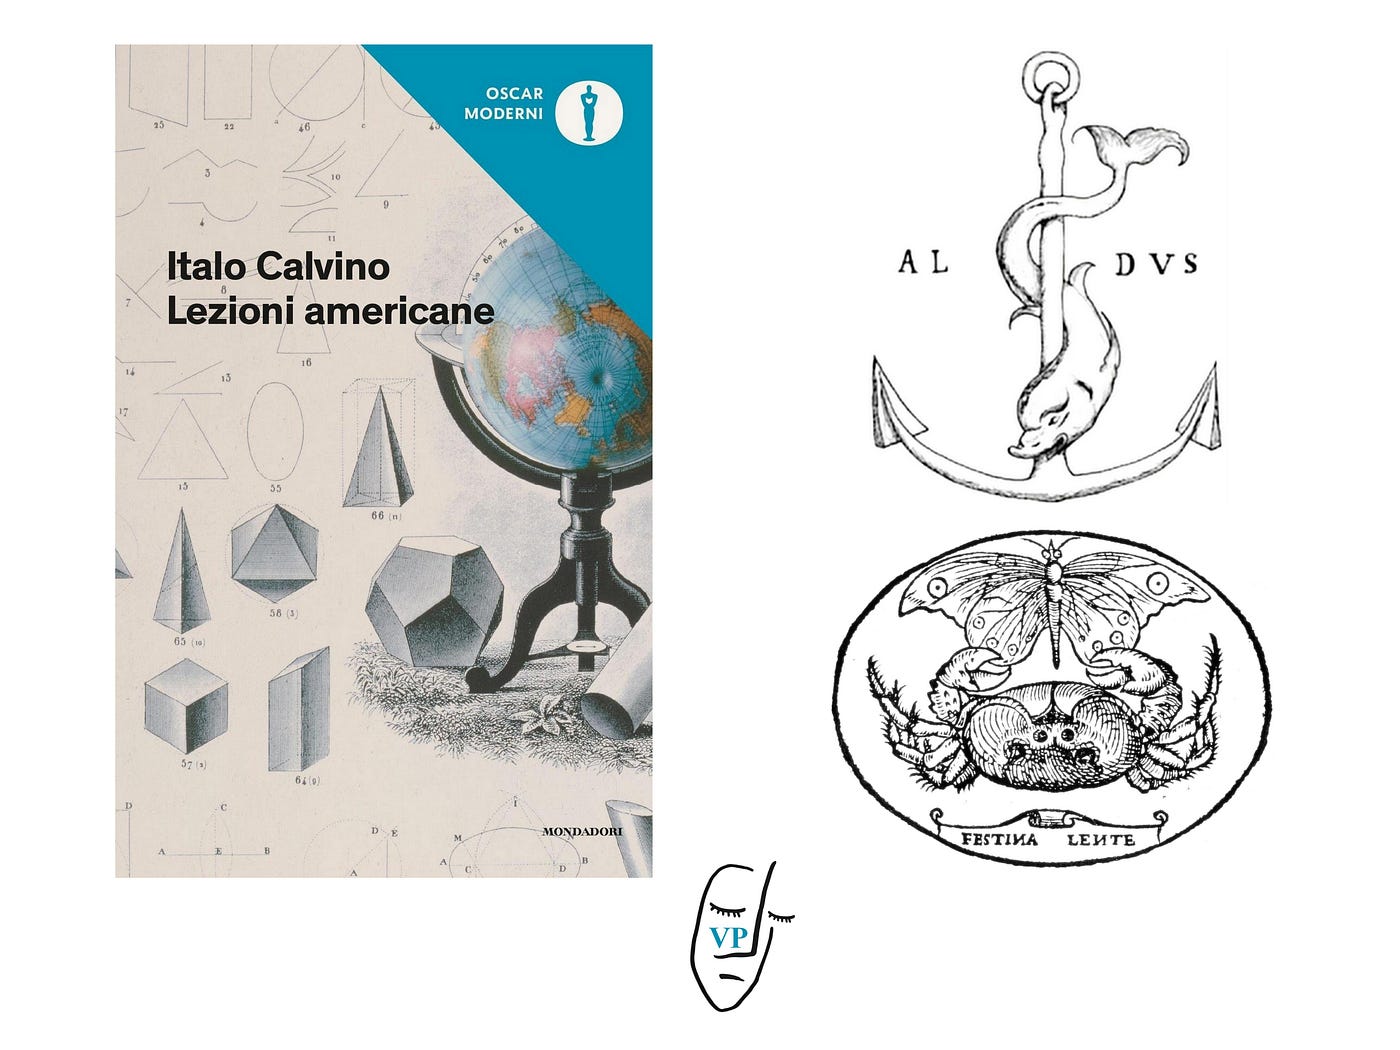 Festina lente. La prontezza e l'indugio nella lezione americana sulla  Rapidità di Italo Calvino | by Veronica Permer | Medium